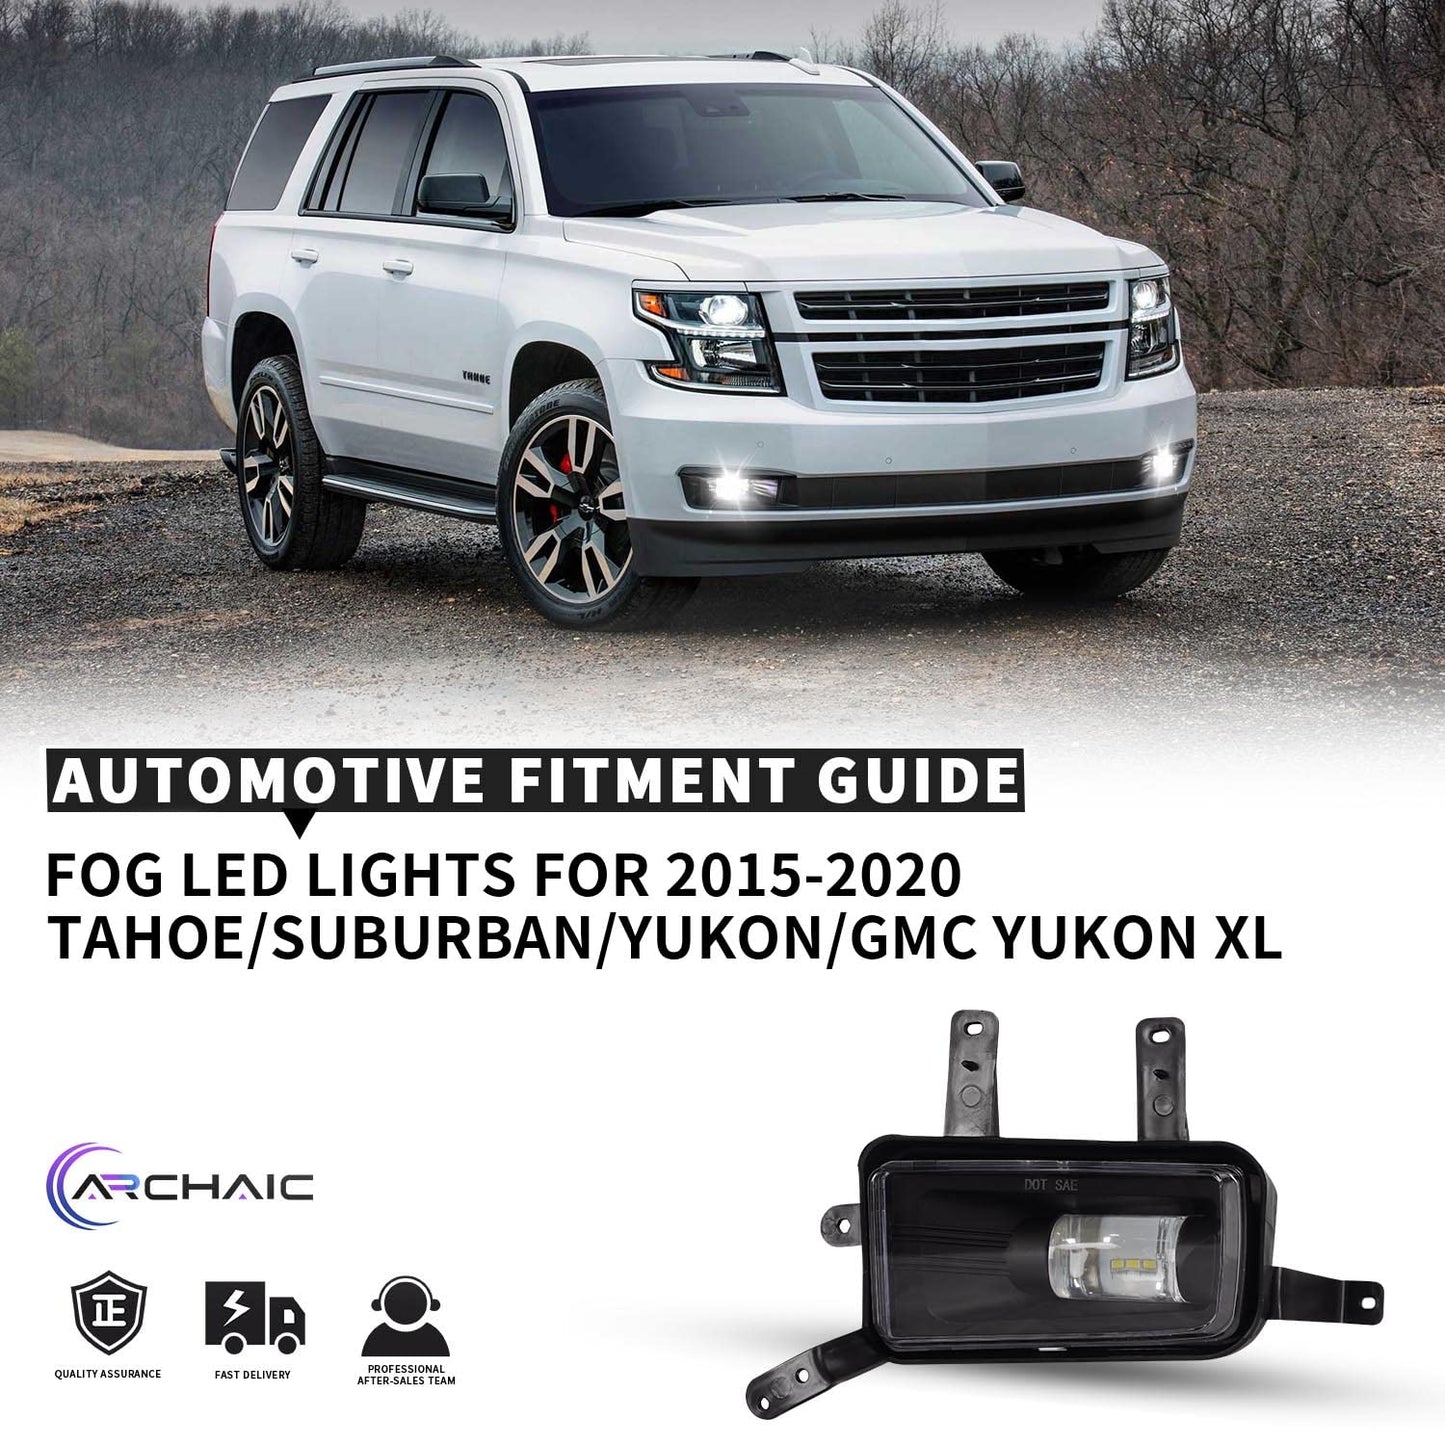 LED Fog Light For Chevy TAHOE/Suburban/YUKON/GMC Yukon XL 2015-2020